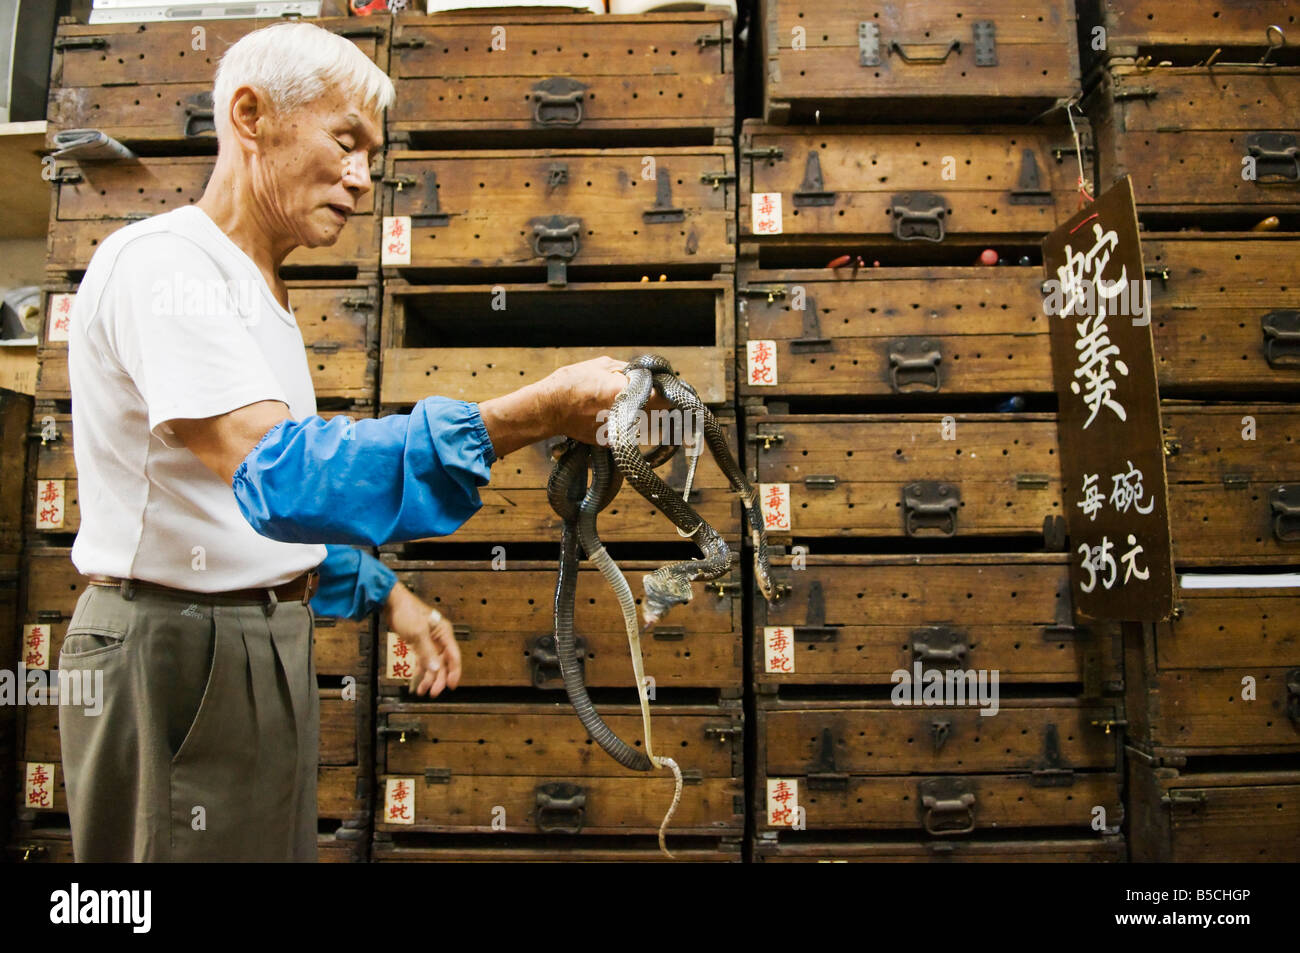 'Snakes y reptiles son mantenidos en estas cajas de madera tradicional en una tienda tradicional de serpiente en Hong Kong". Foto de stock